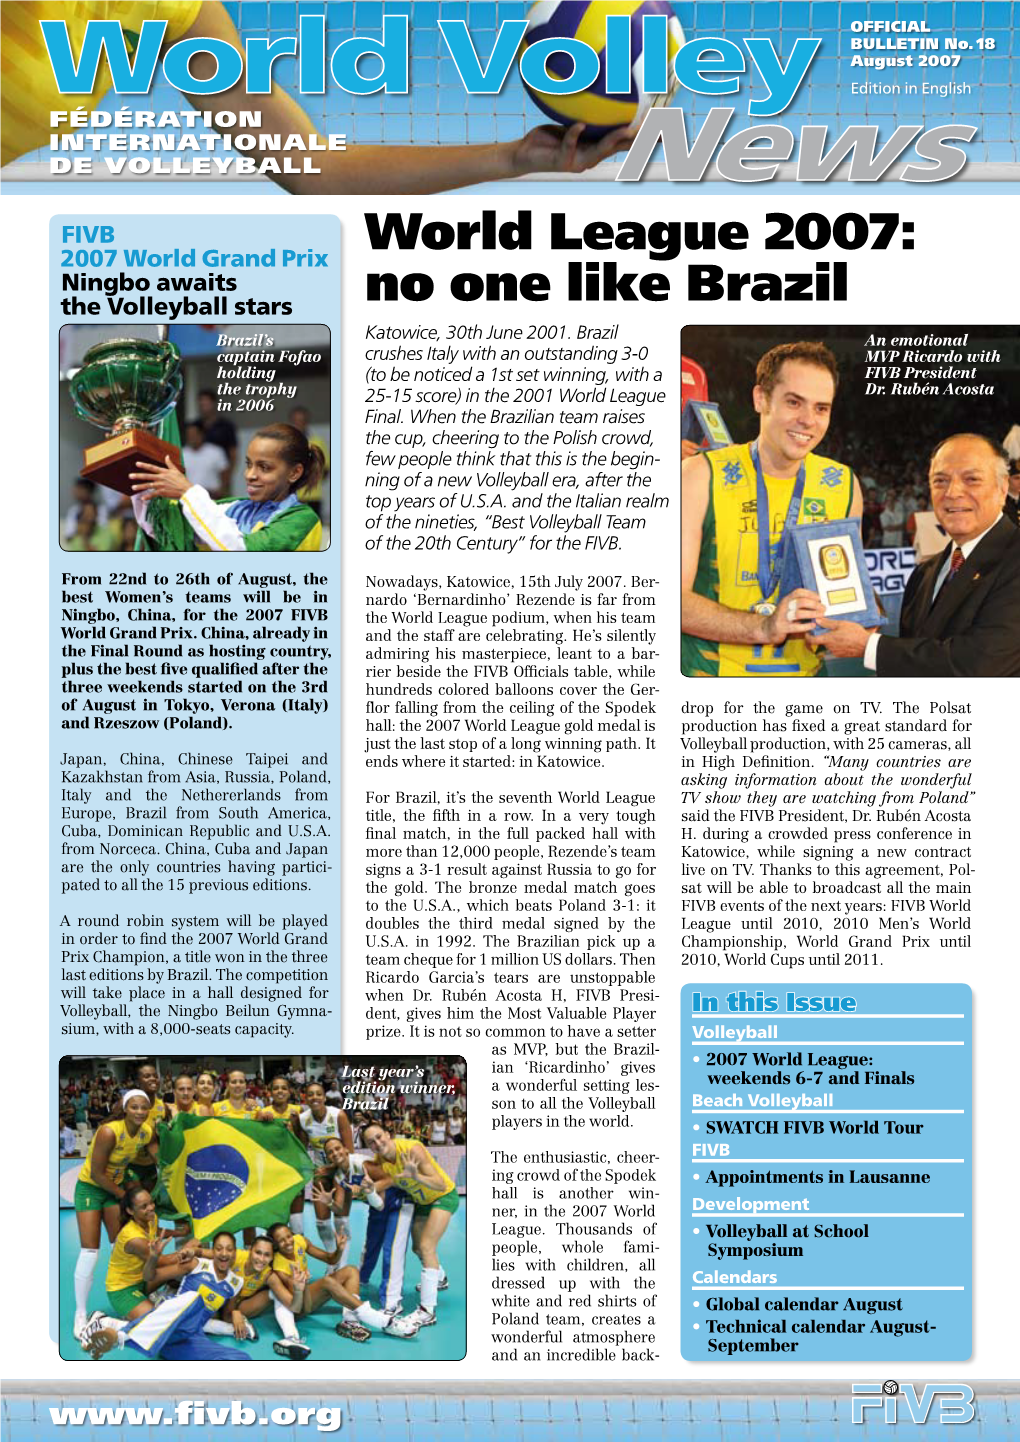 World League 2007: No One Like Brazil